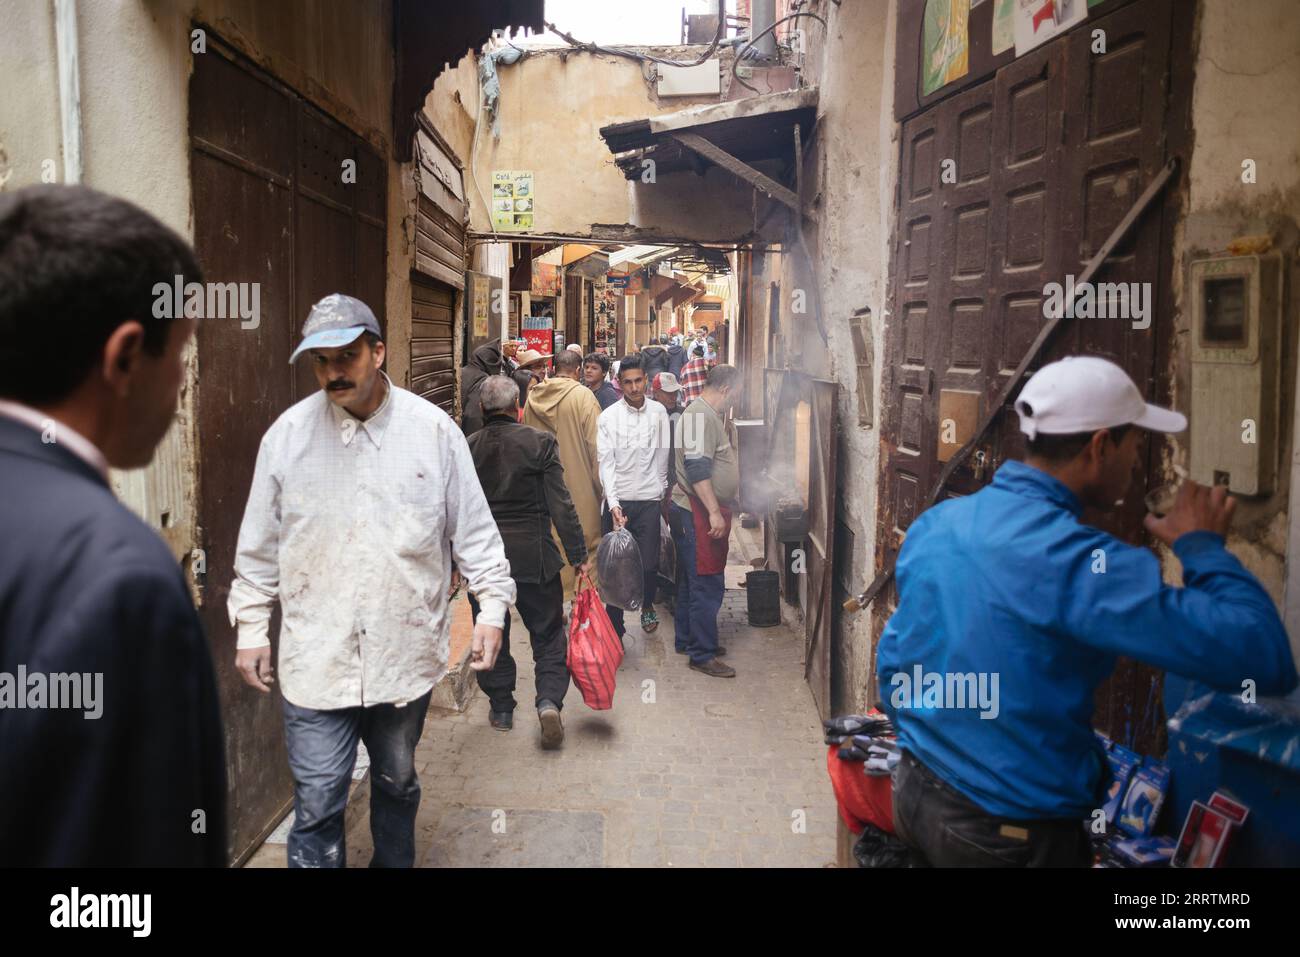 Marrakesch, Marokko-6. November 2019: Marokkanische Stadtlandschaft. Menschen, die durch die engen Gassen alter Gebäude gehen. Stockfoto